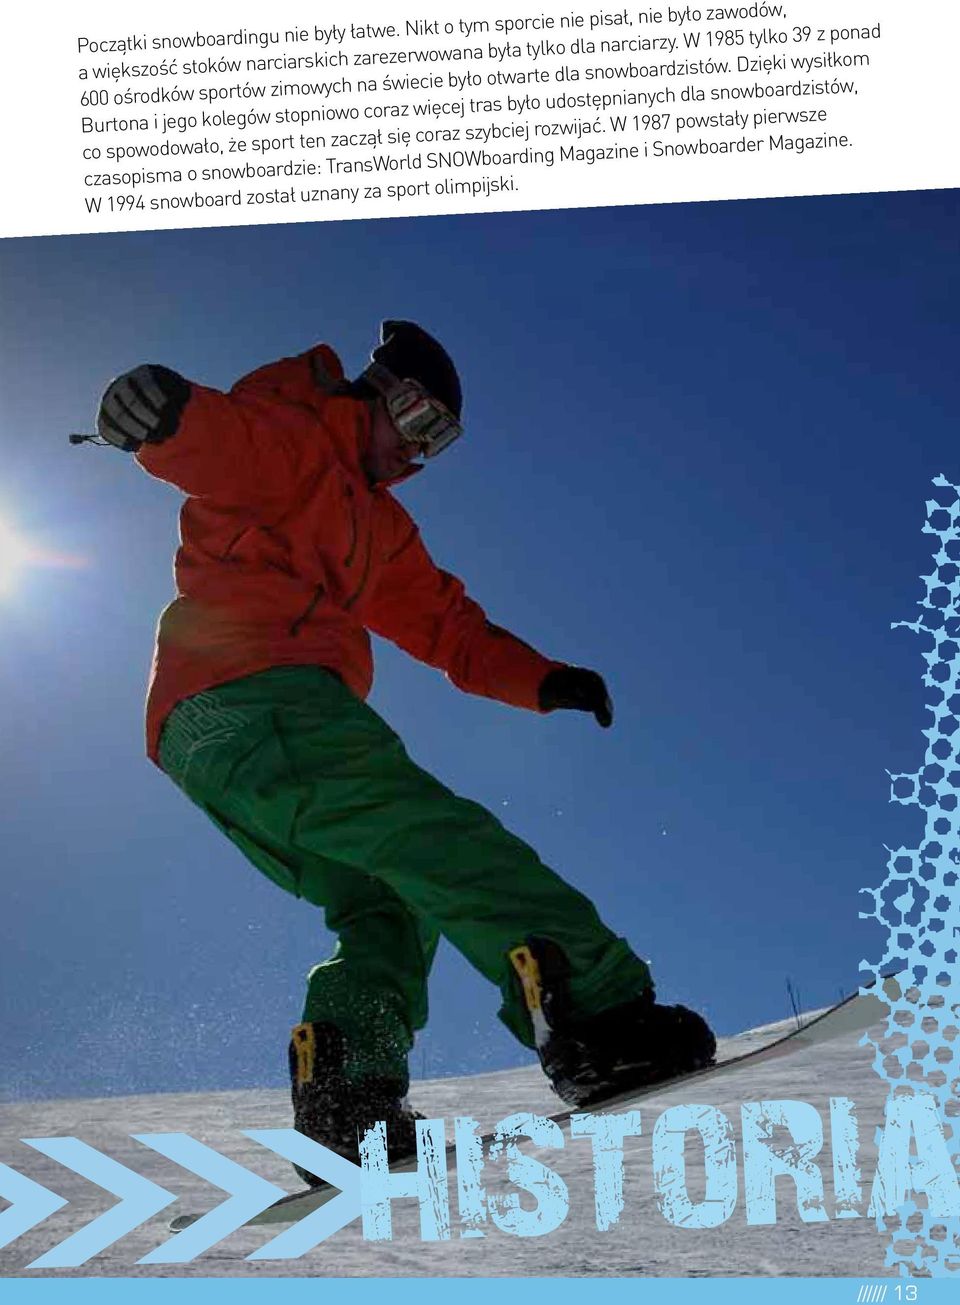 W 1985 tylko 39 z ponad 600 ośrodków sportów zimowych na świecie było otwarte dla snowboardzistów.